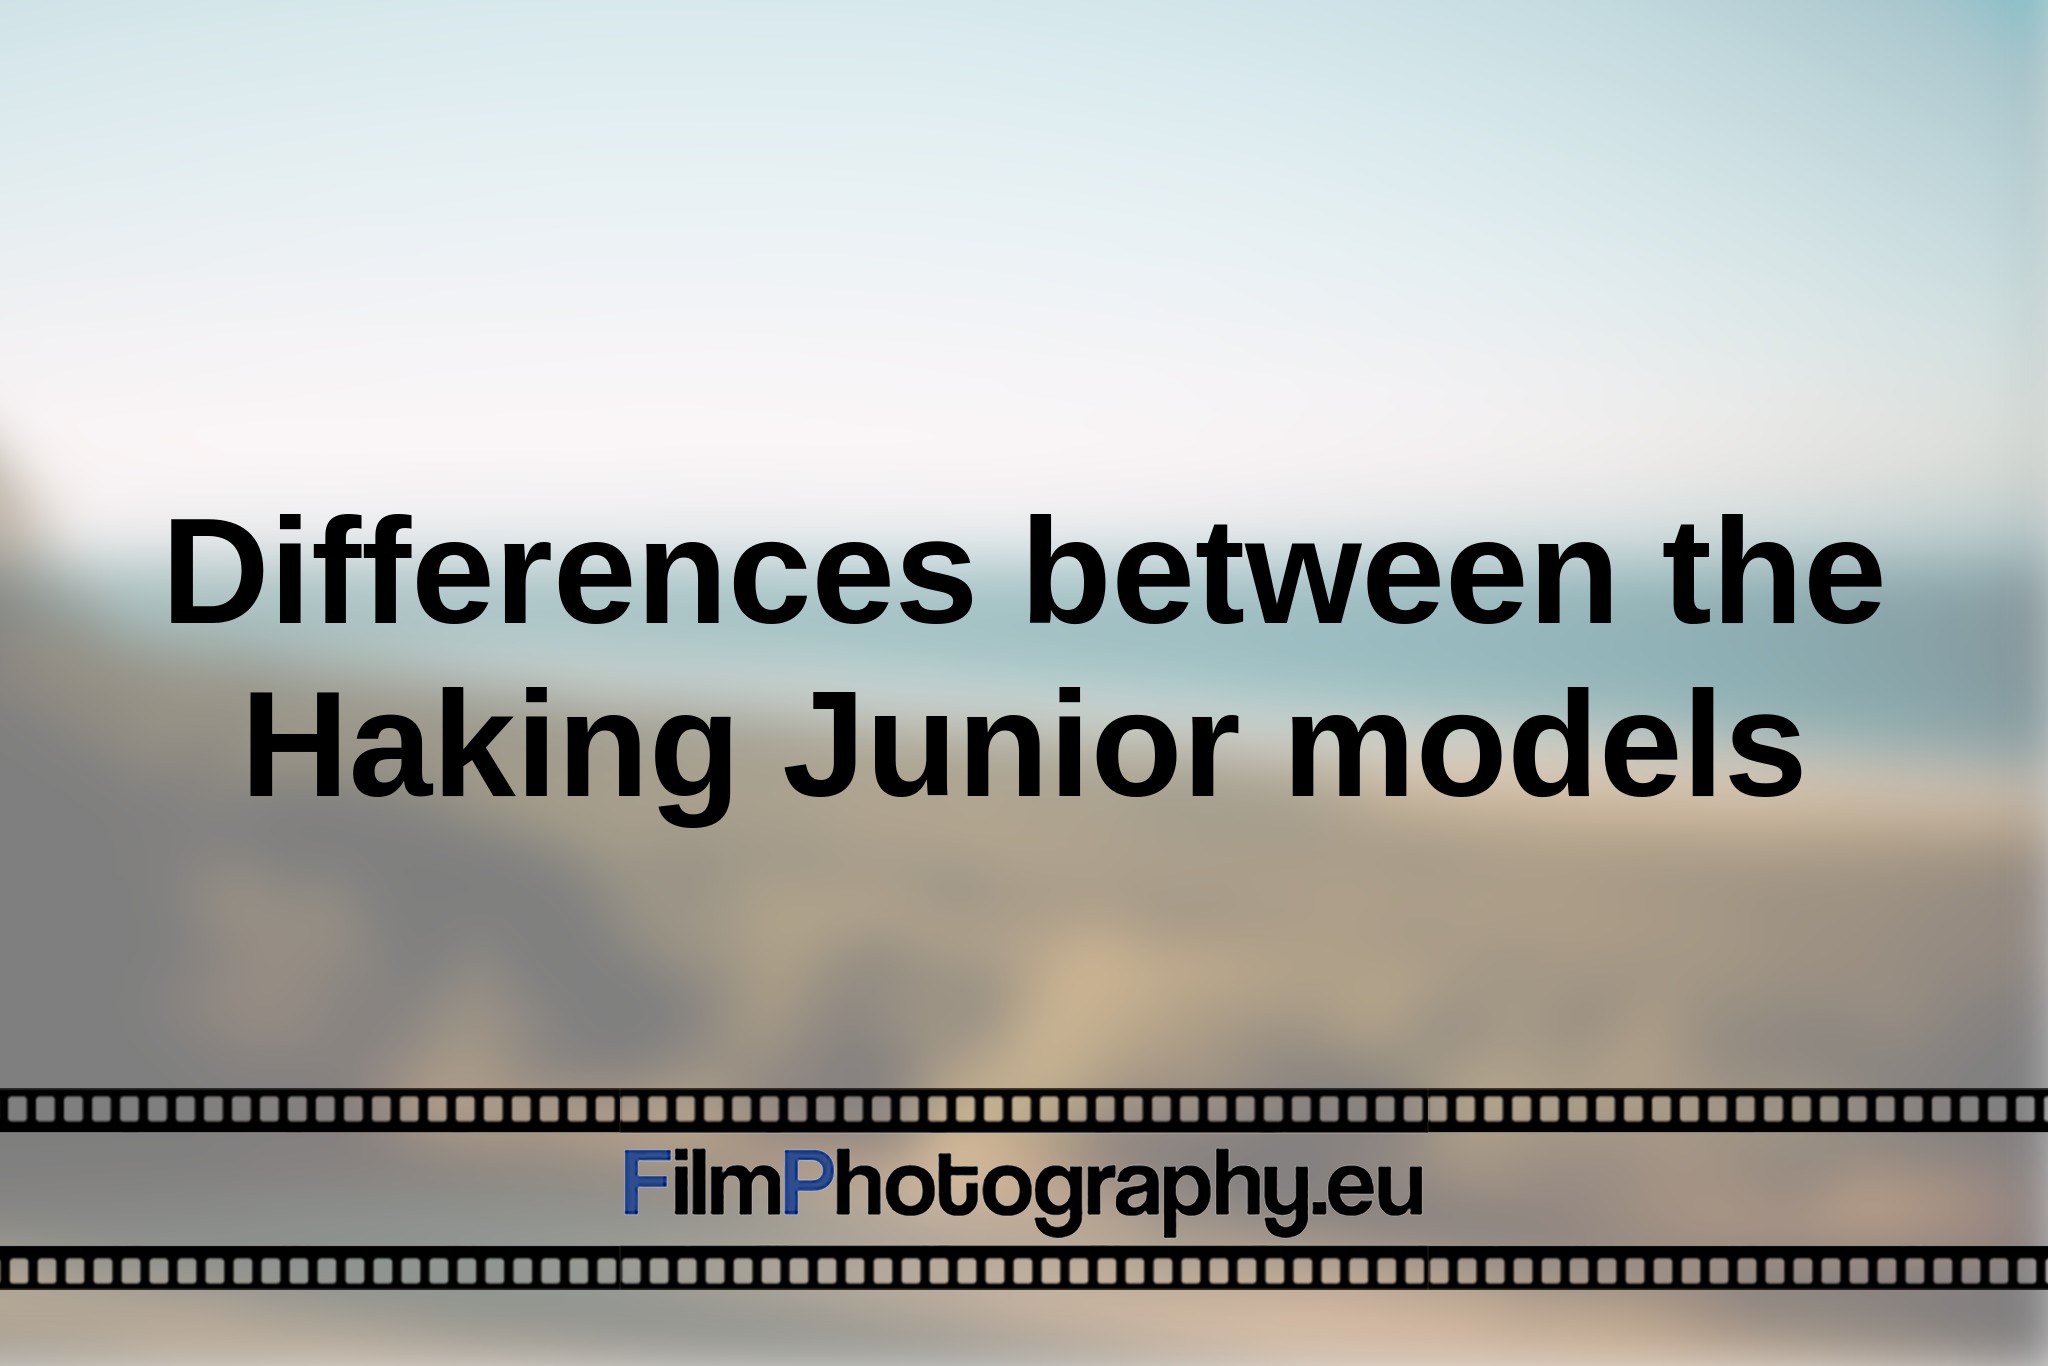 differences-between-the-haking-junior-models-en-bnv.jpg